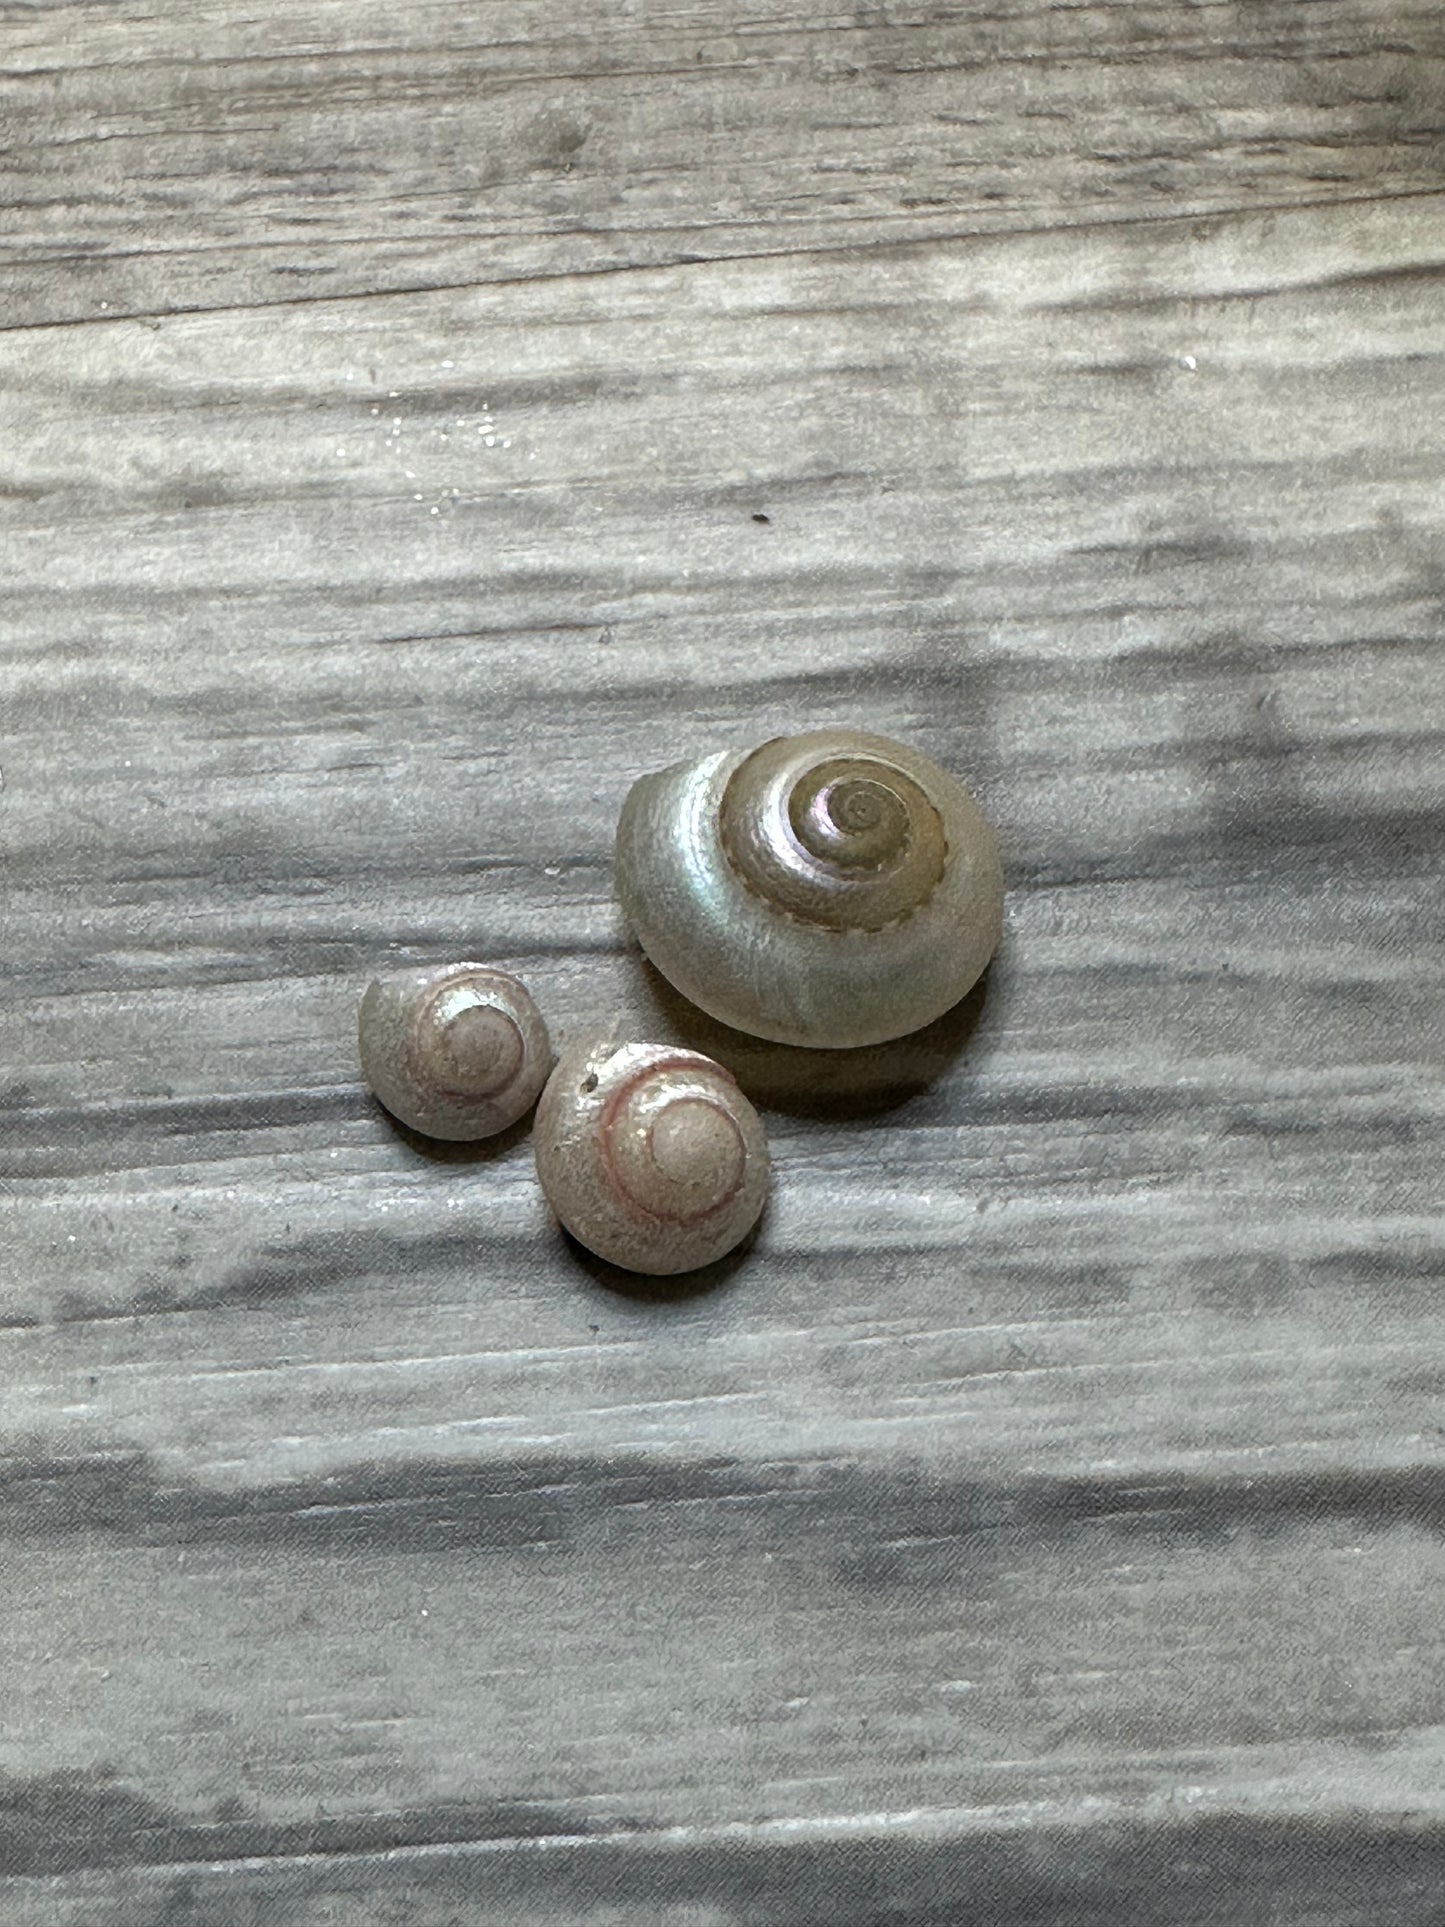 1/4” Pearlized Umbonium Shells